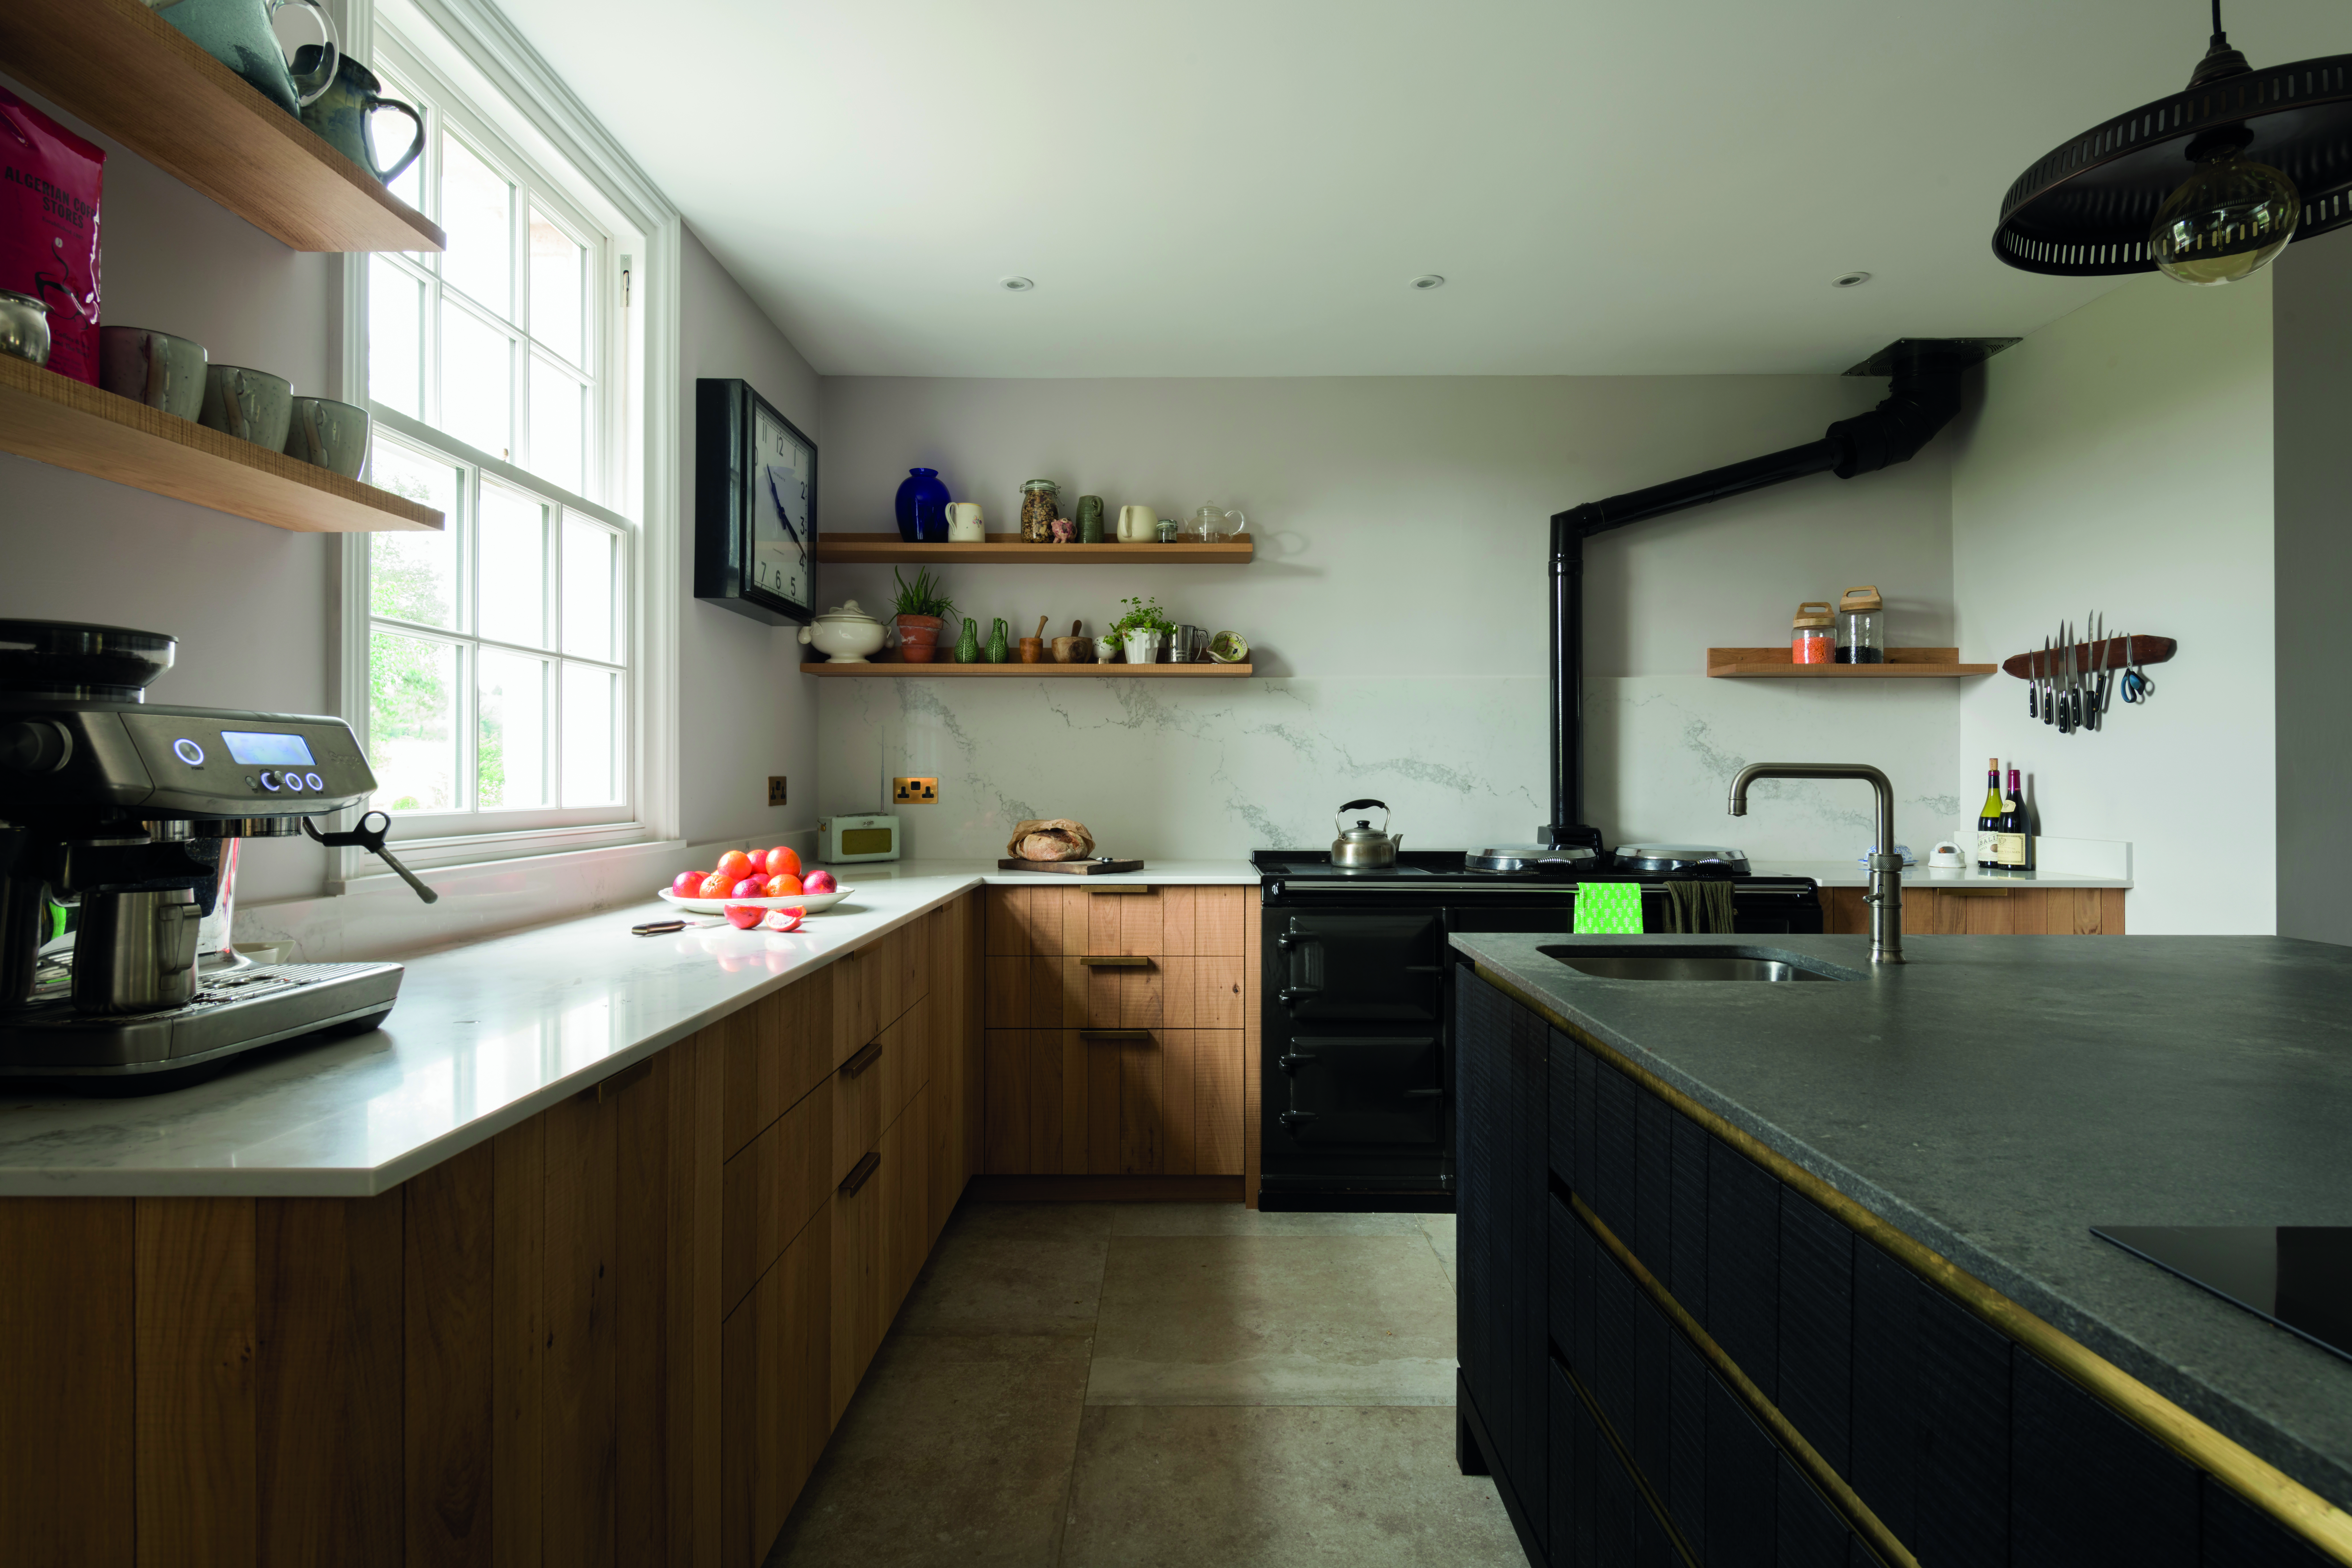 Inglis Hall Kitchen Design - Aucoot Journal - Kitchen renovation